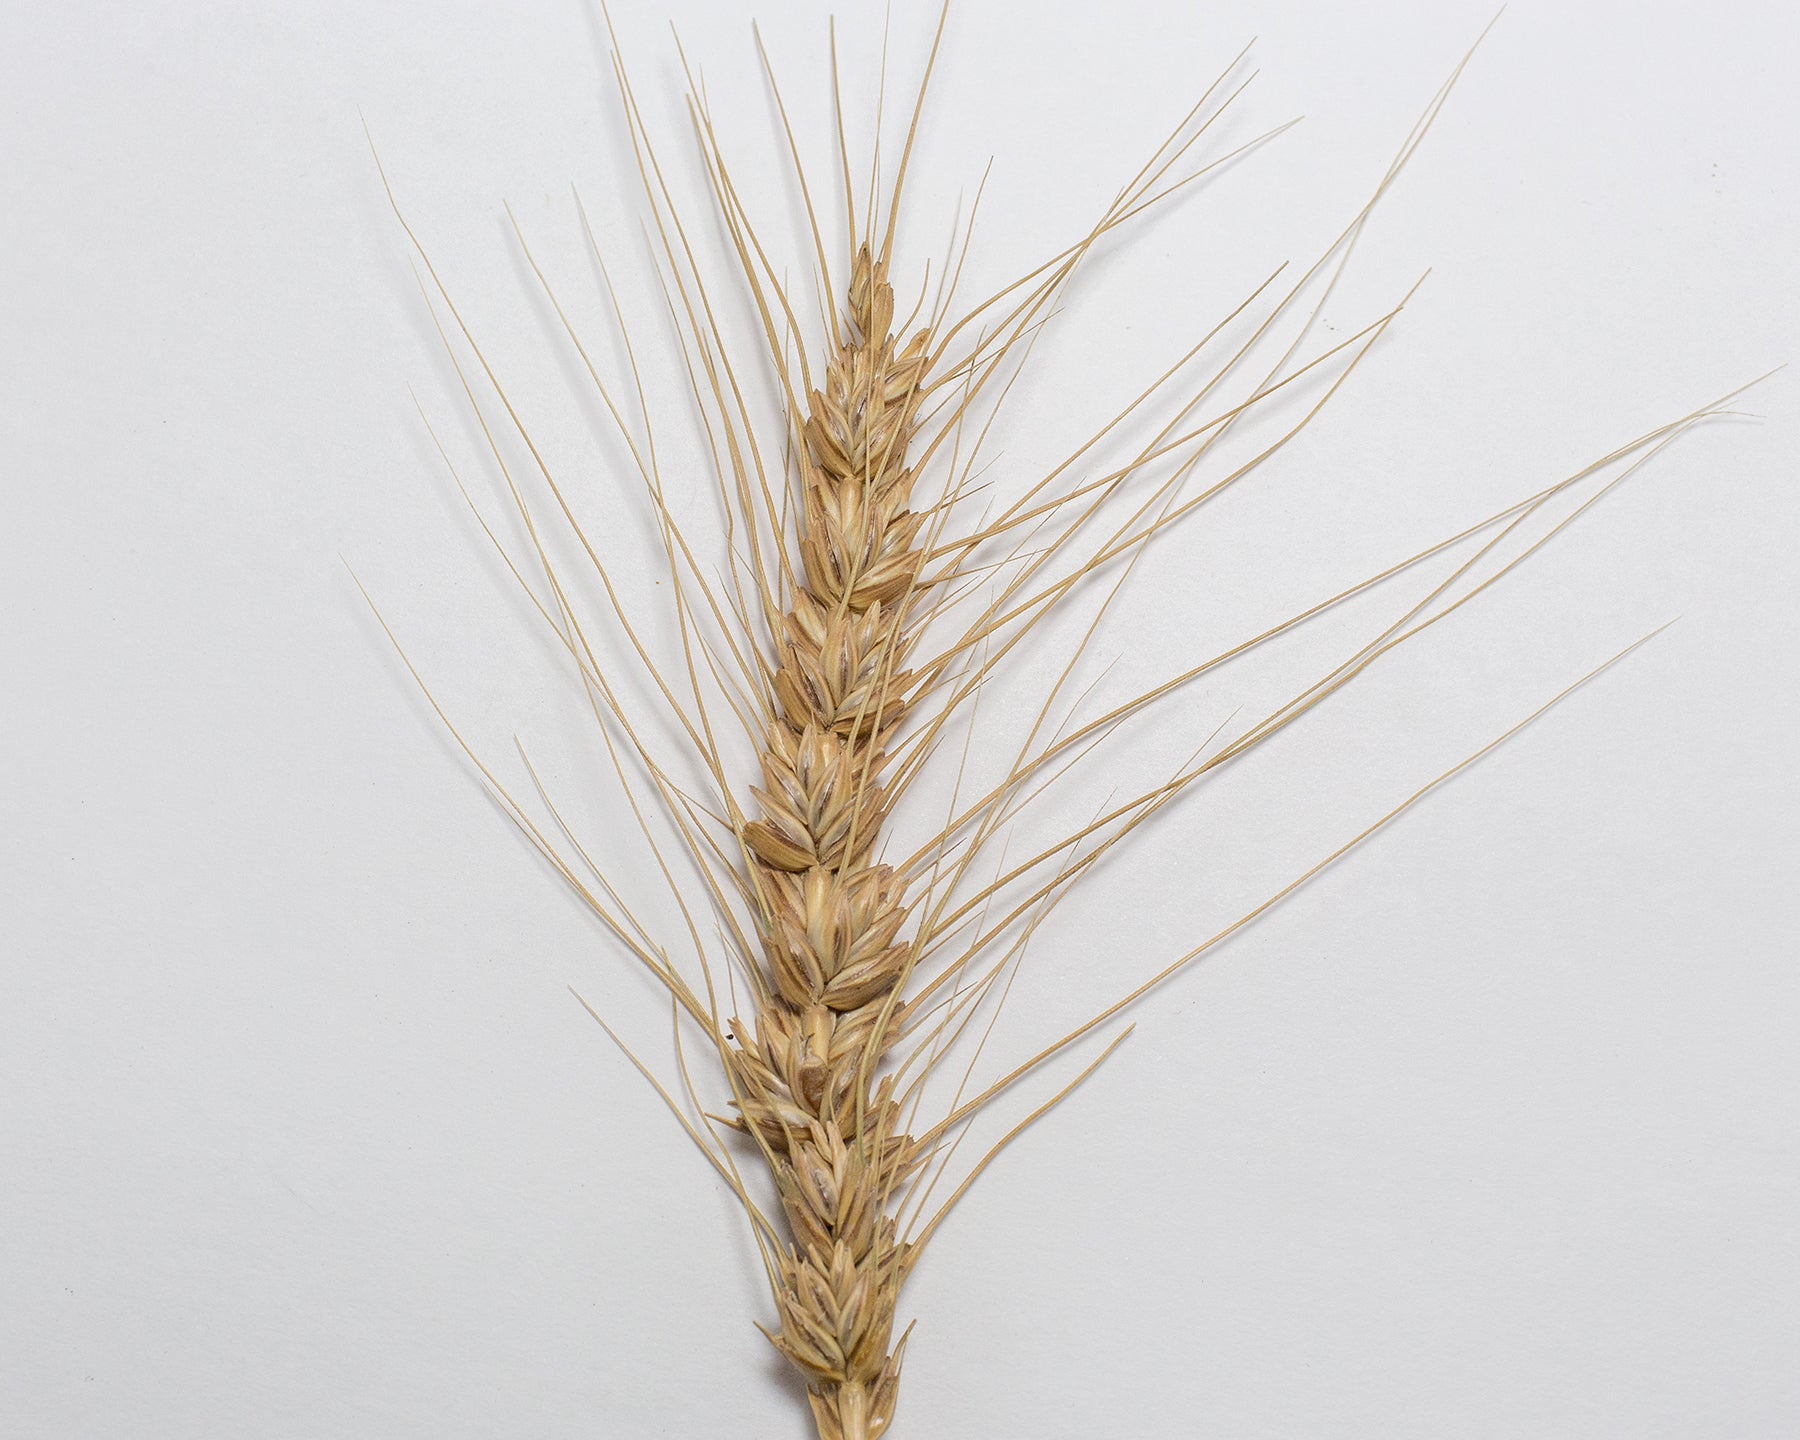 Wheat (Bread) - Ladoga